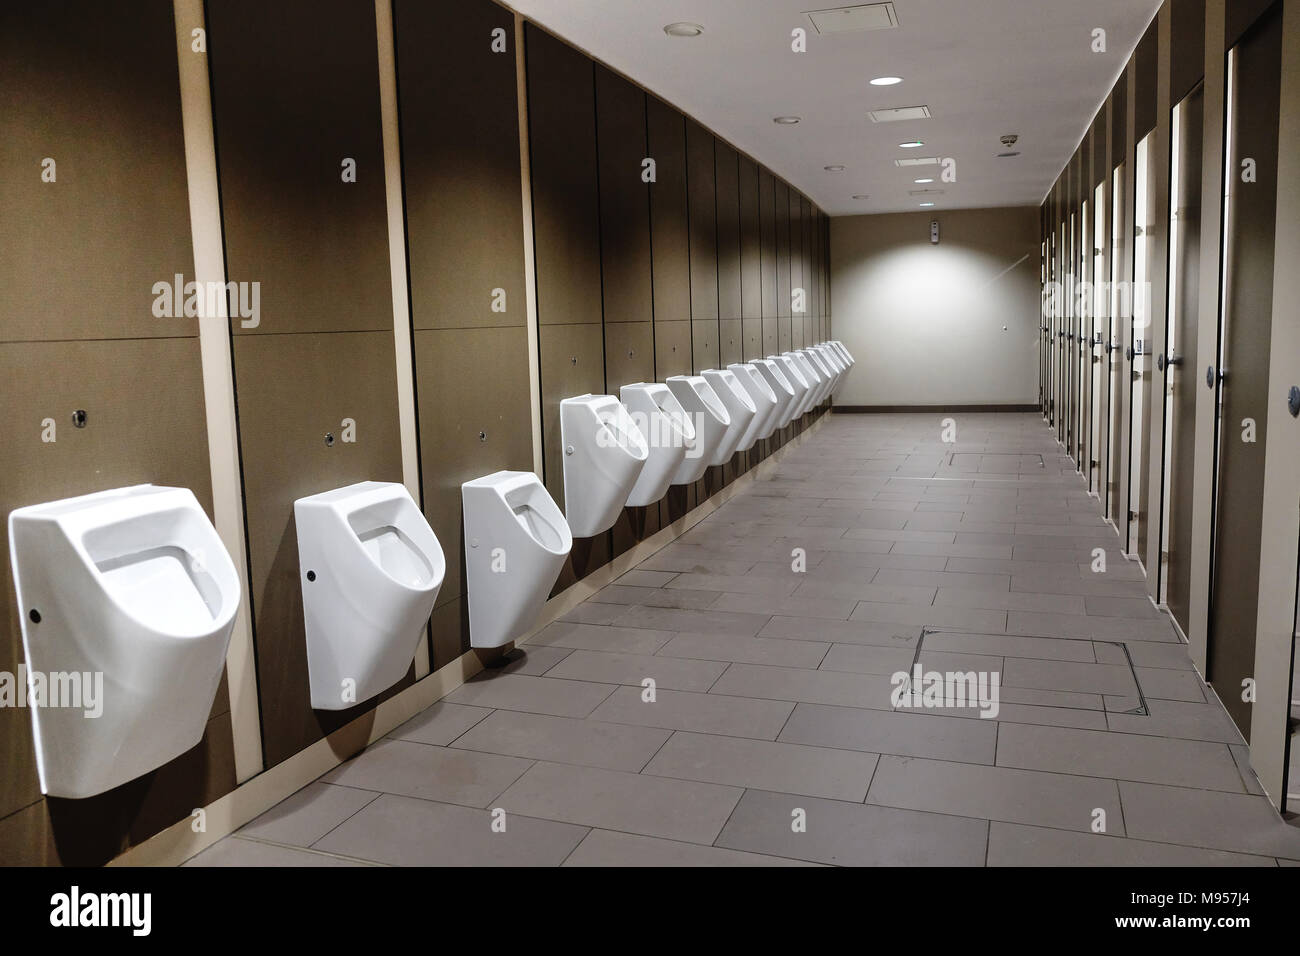 Los urinarios, en una estación de servicio de autopista Foto de stock